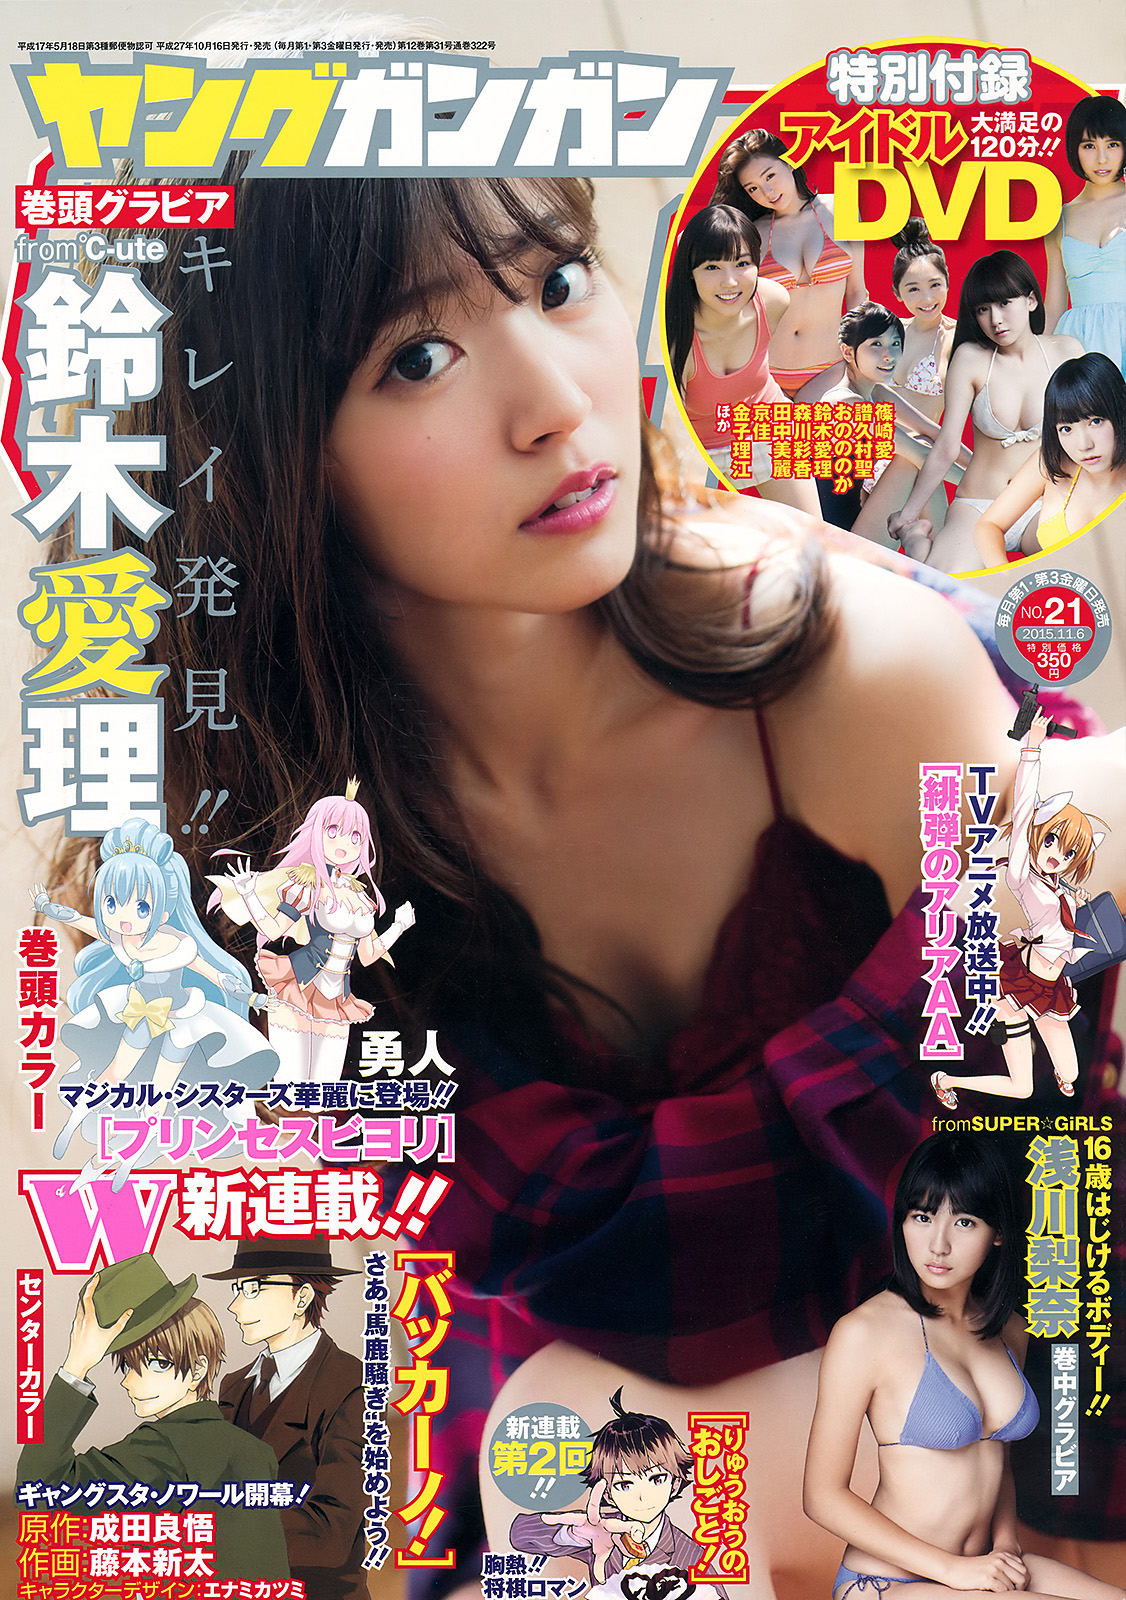 Suzuki Airi 鈴木 愛理 °C-ute, Young Gangan Magazine 2015 No.21 Gravure